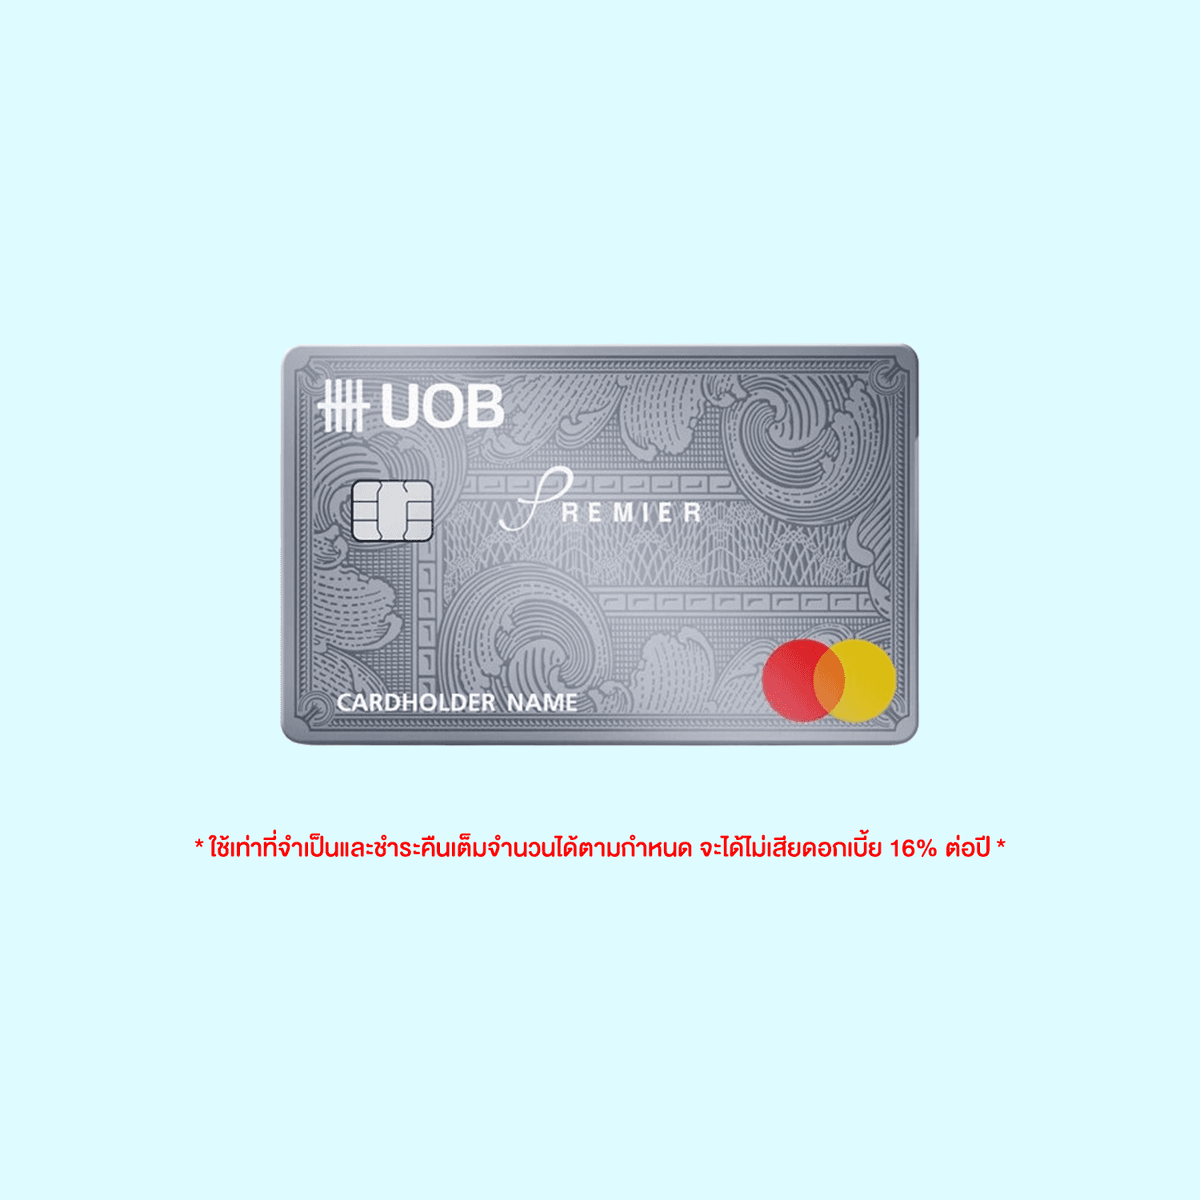 รูปภาพ:บัตรเครดิตสะสมไมล์ UOB Premier